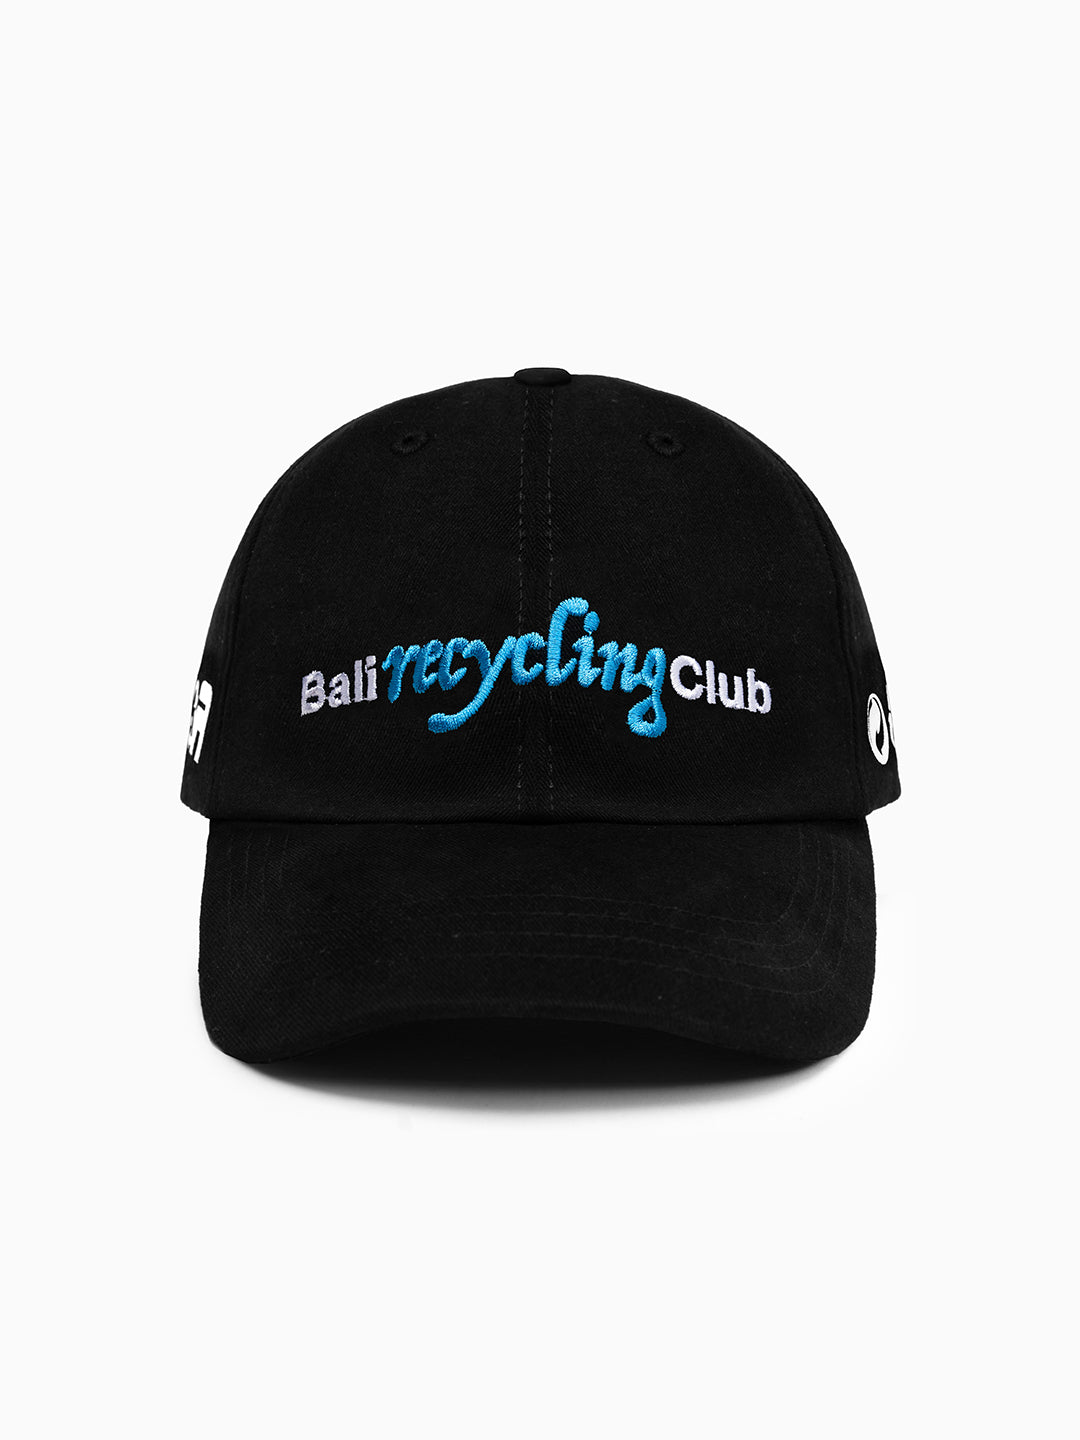 Bali Recycling Club Cap Black